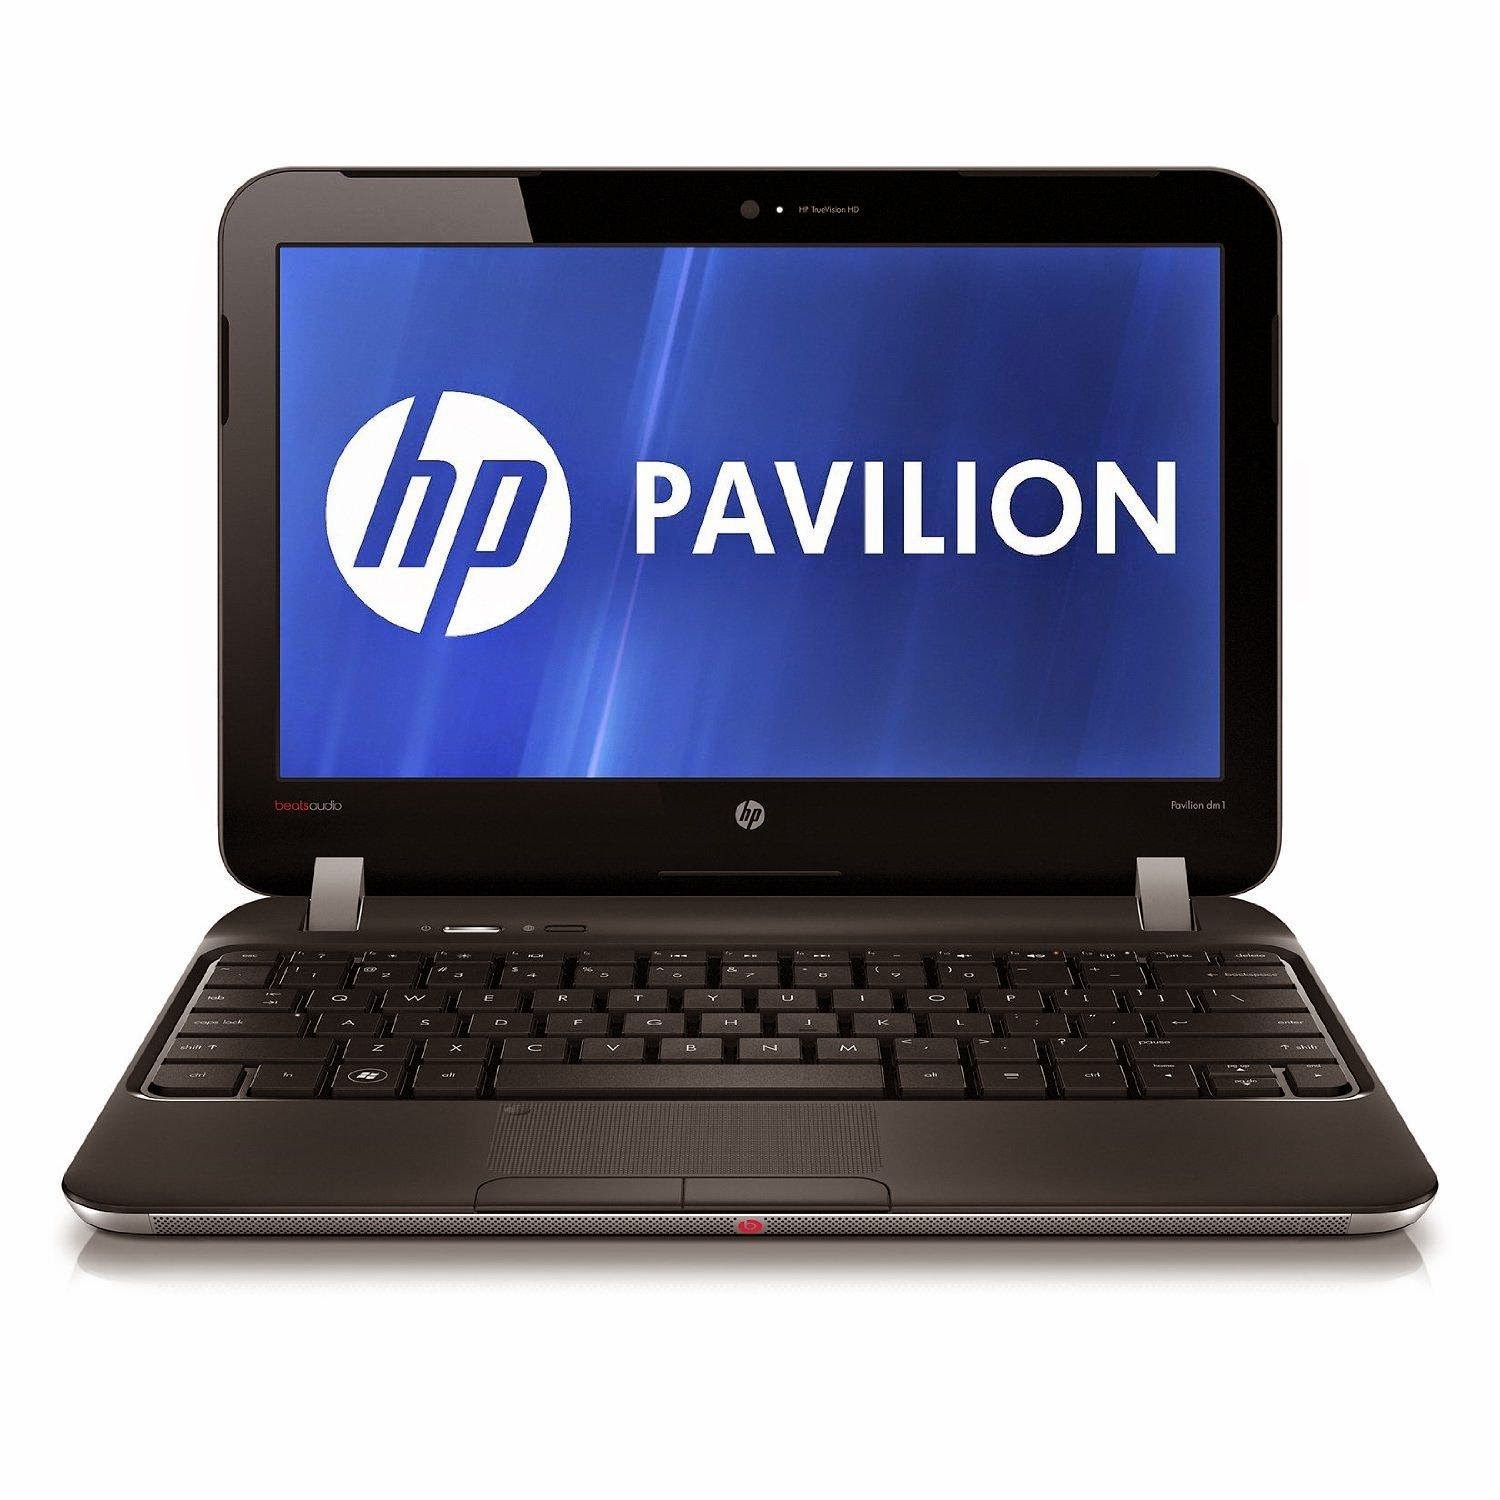 Análisis de la Laptop HP Pavilion dm1